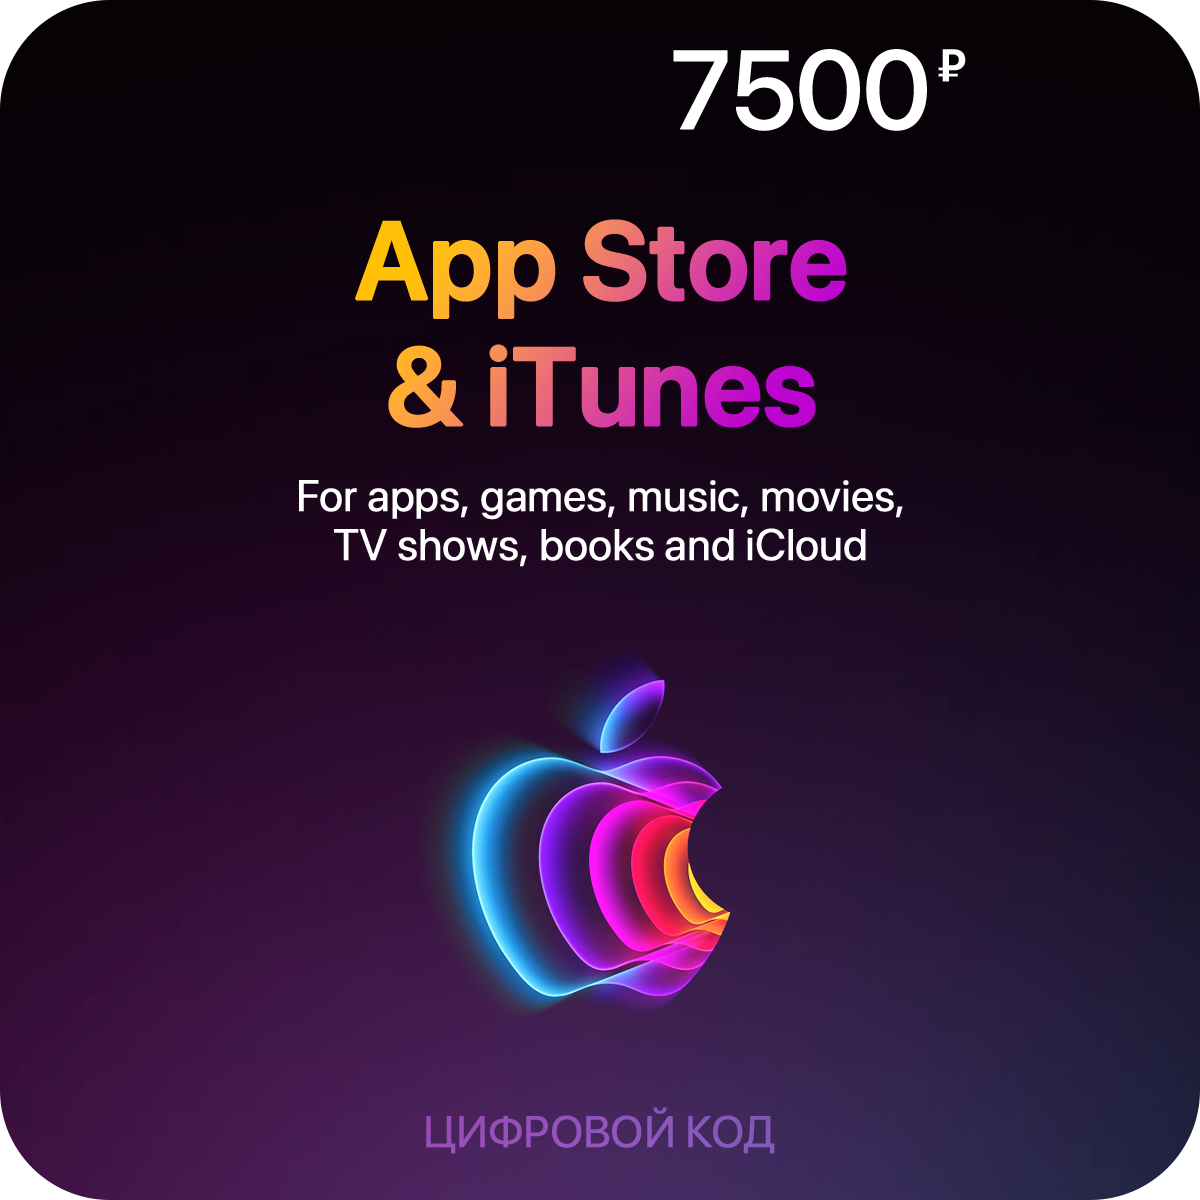 Пополнение счета App Store & iTunes (7500 рублей)